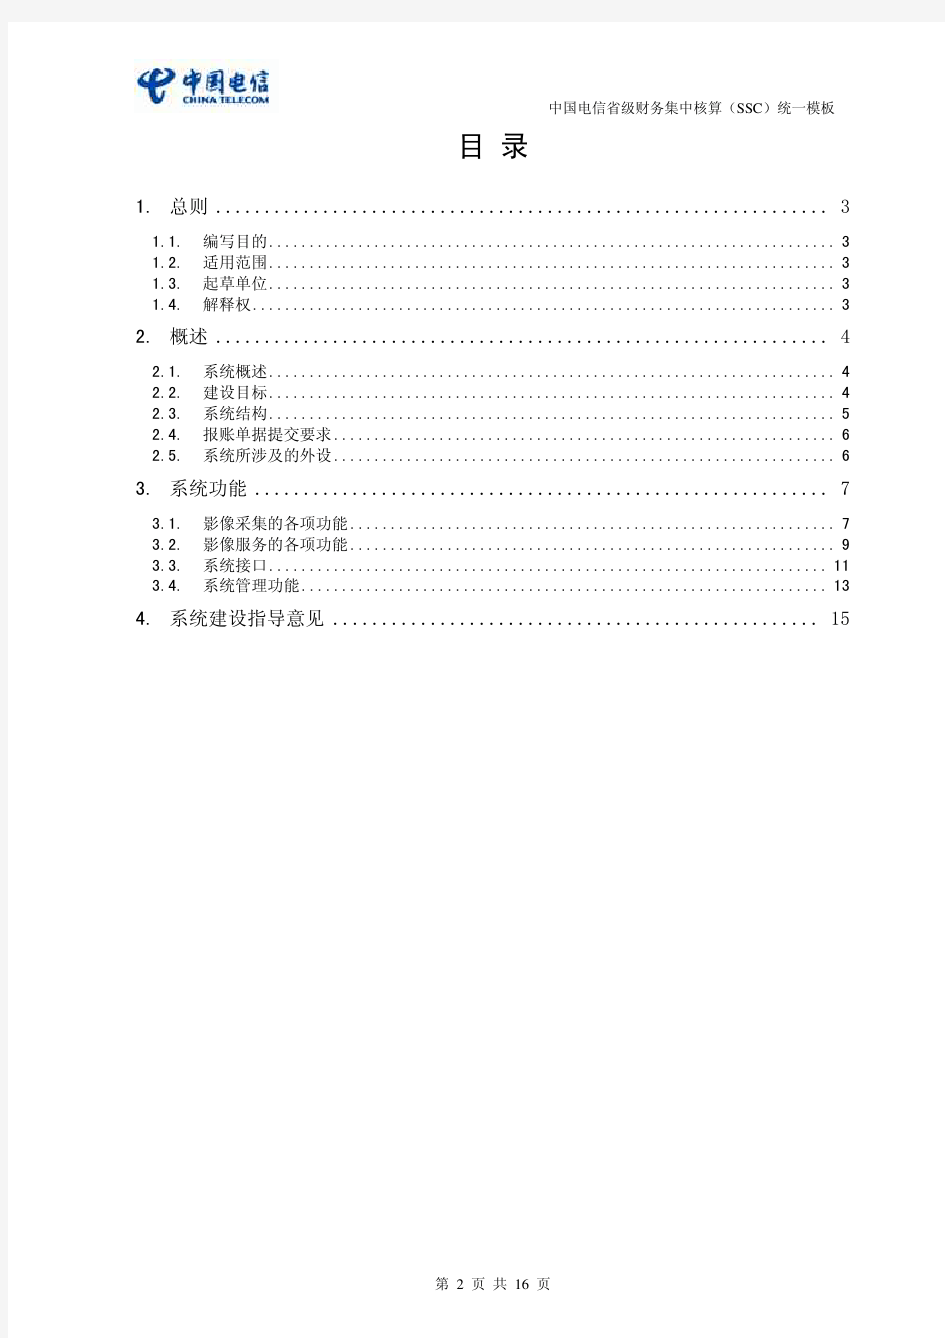 中国电信SSC财务资料影像系统功能规范-IT-SSC-YX(V1.0)